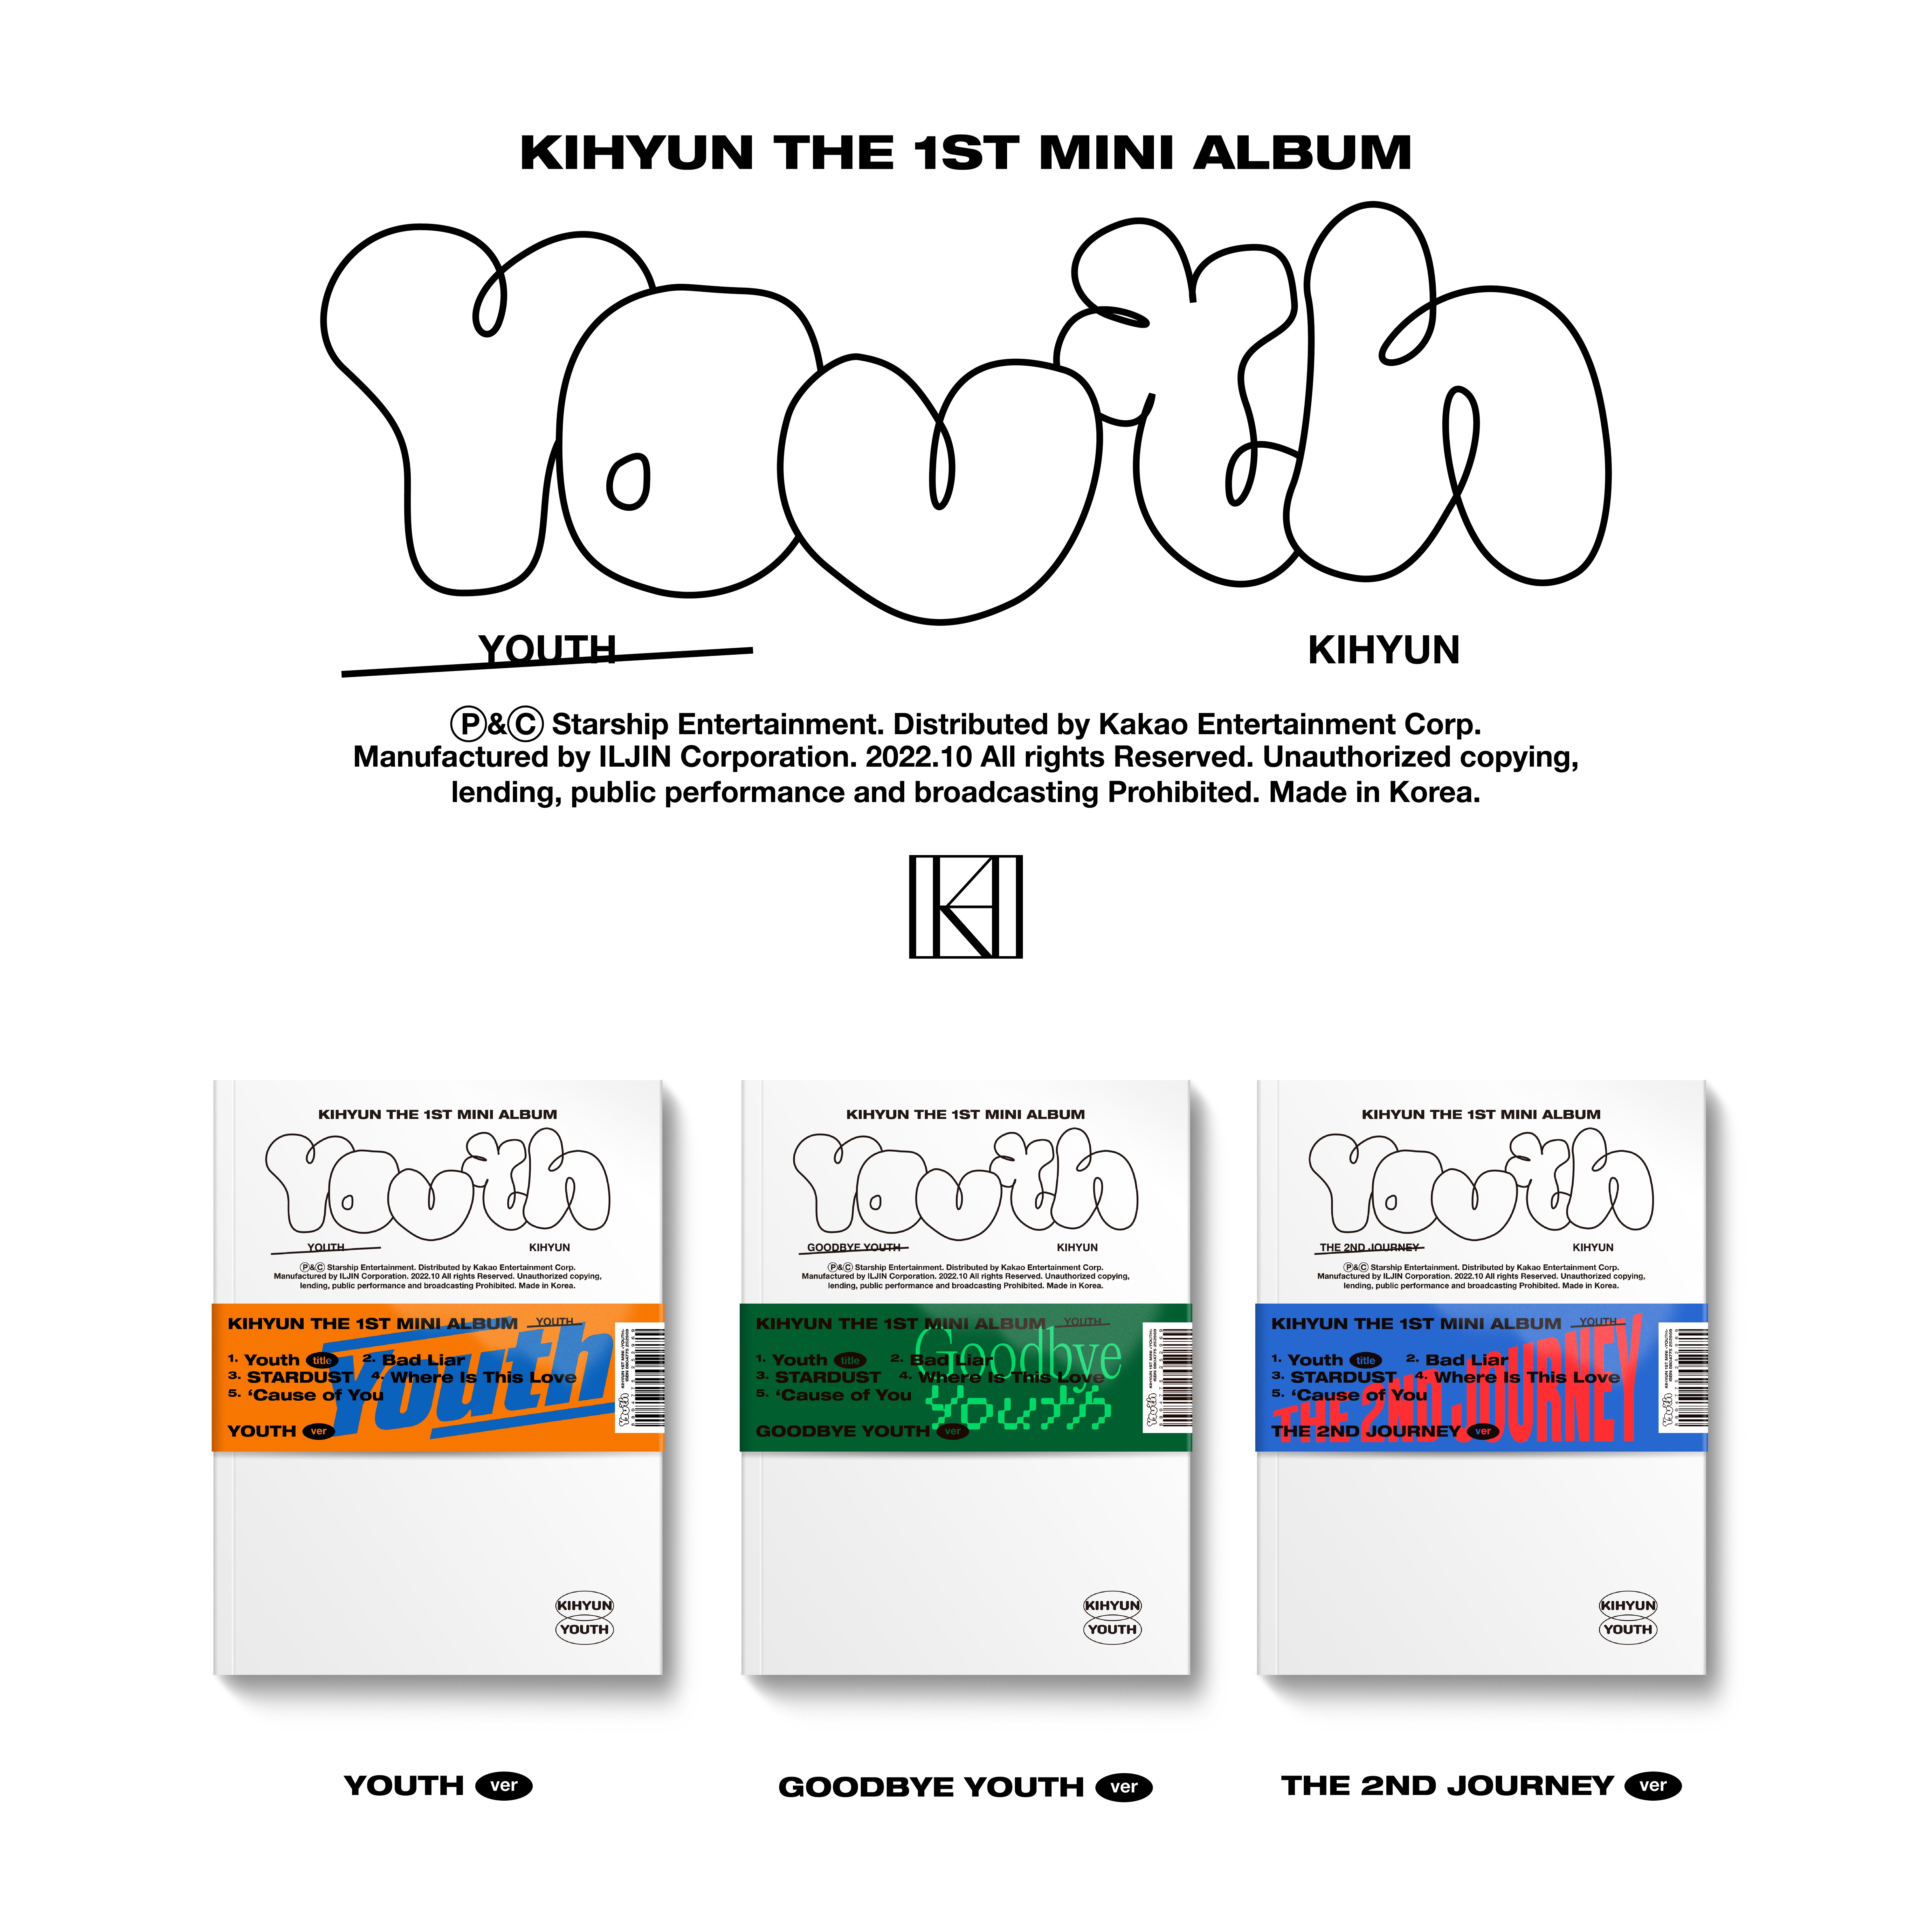 [全款 裸专][2nd] [视频签售活动] Kihyun - 迷你专辑 1辑 [YOUTH] (随机版本)_KiYoo_刘基贤中文首站